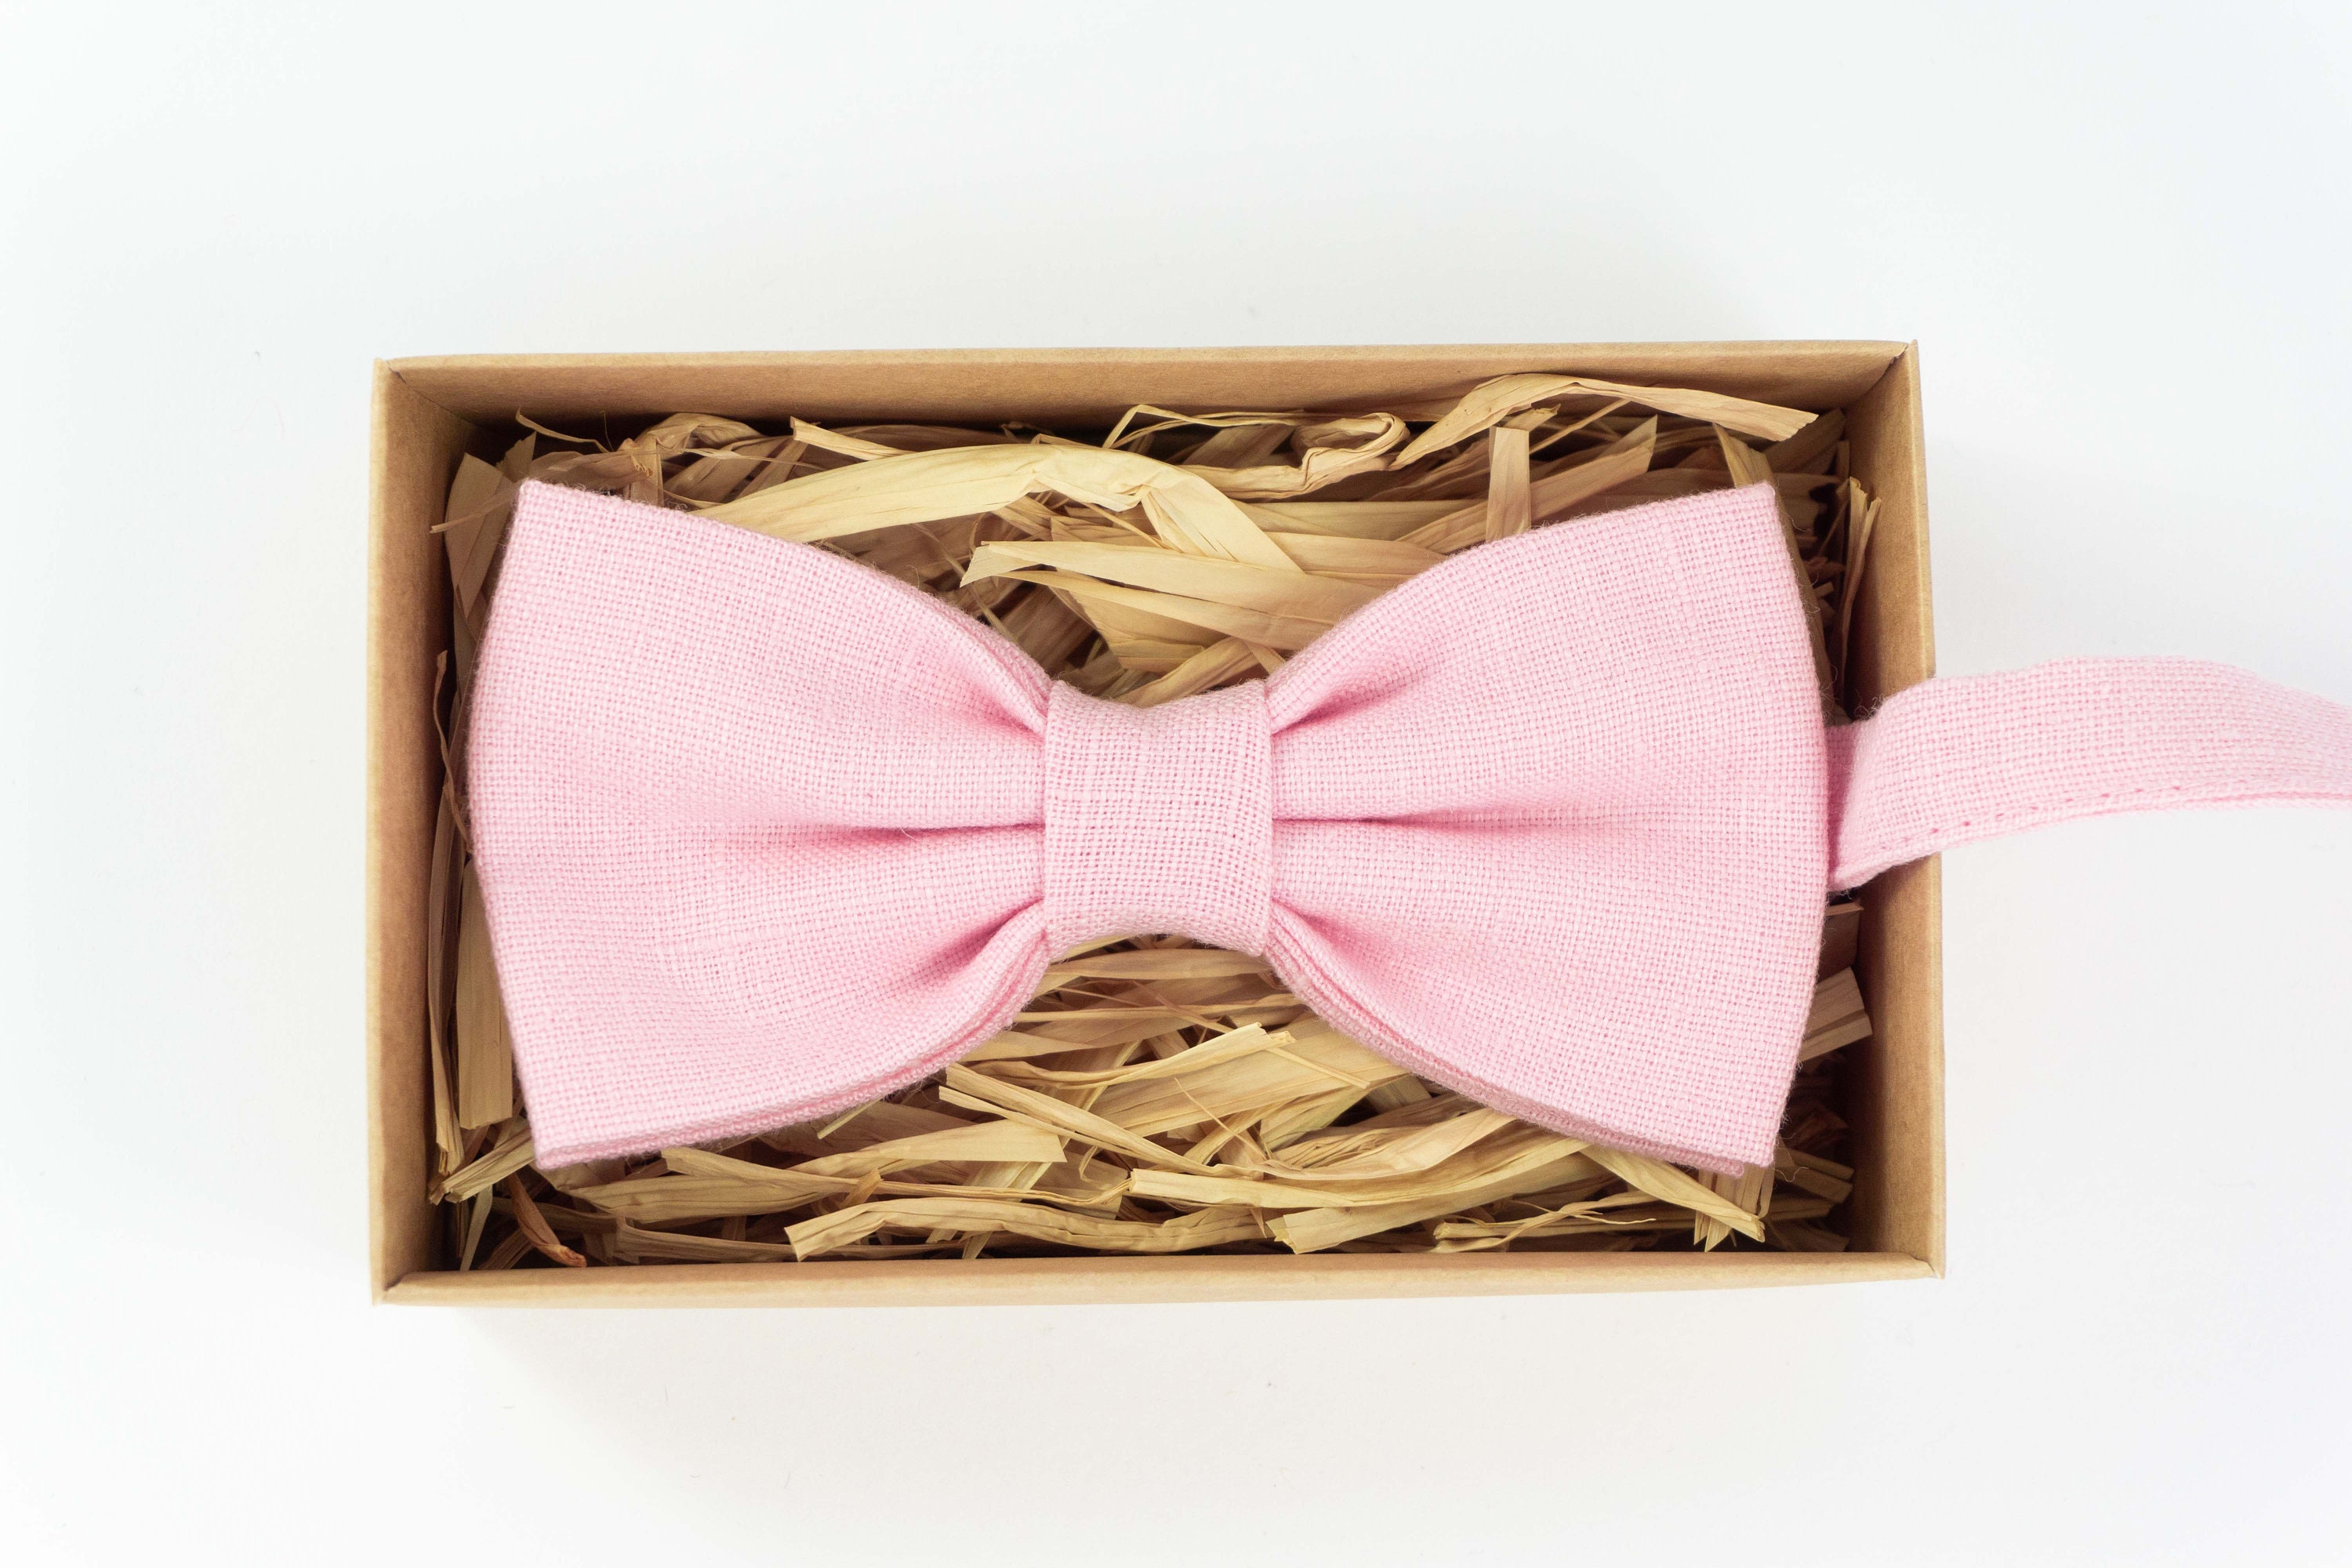 mens skinny ties groomsmen ties pre tied bow ties toddler bow ties Pink color bow tie